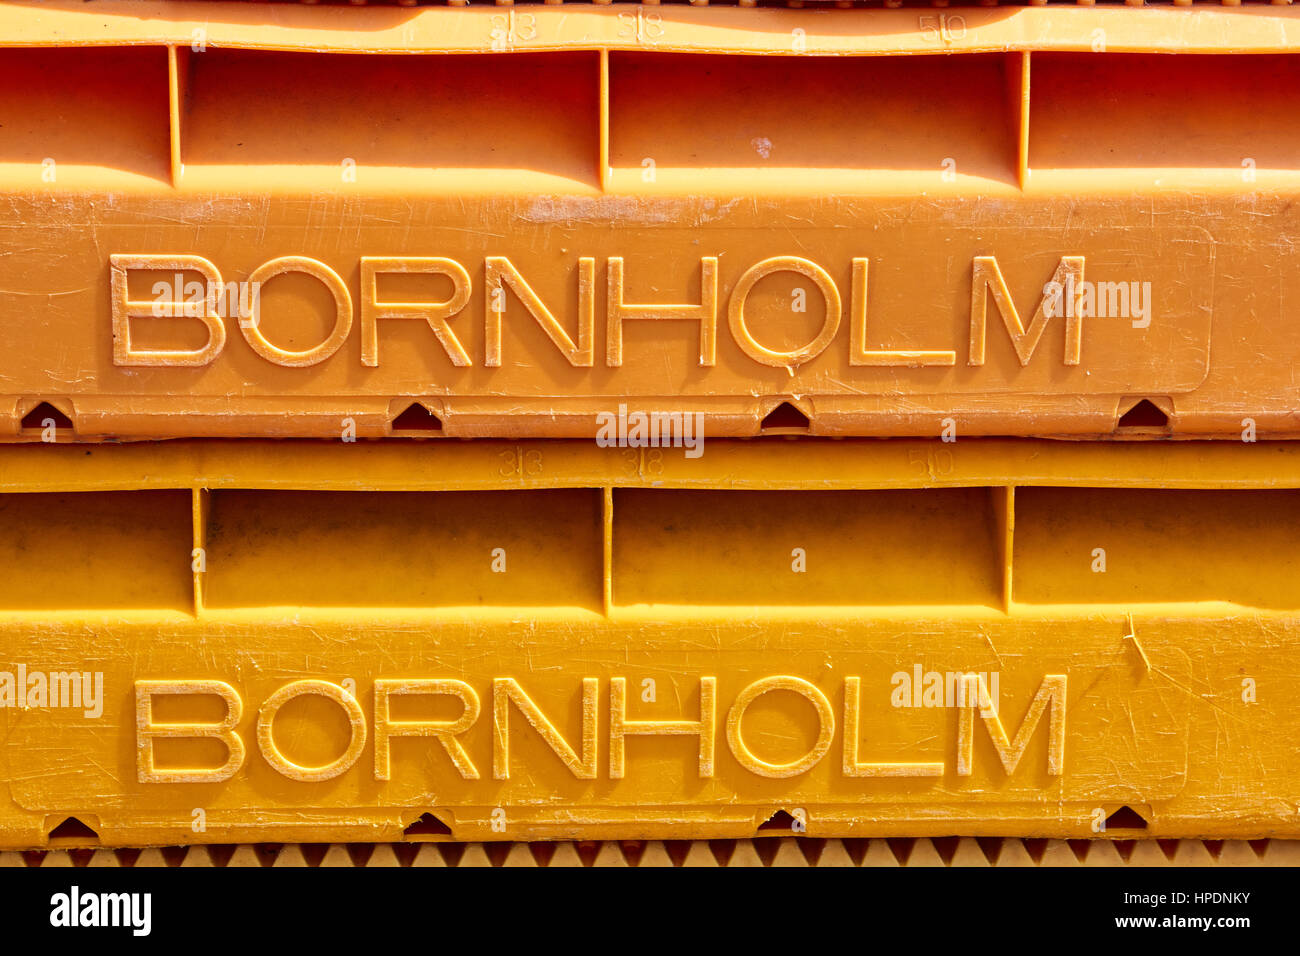 La sezione di plastica due casse di pesce con il testo Bornholm sollevata dalla superficie. Bornholm è il nome dell'isola - non una società Foto Stock